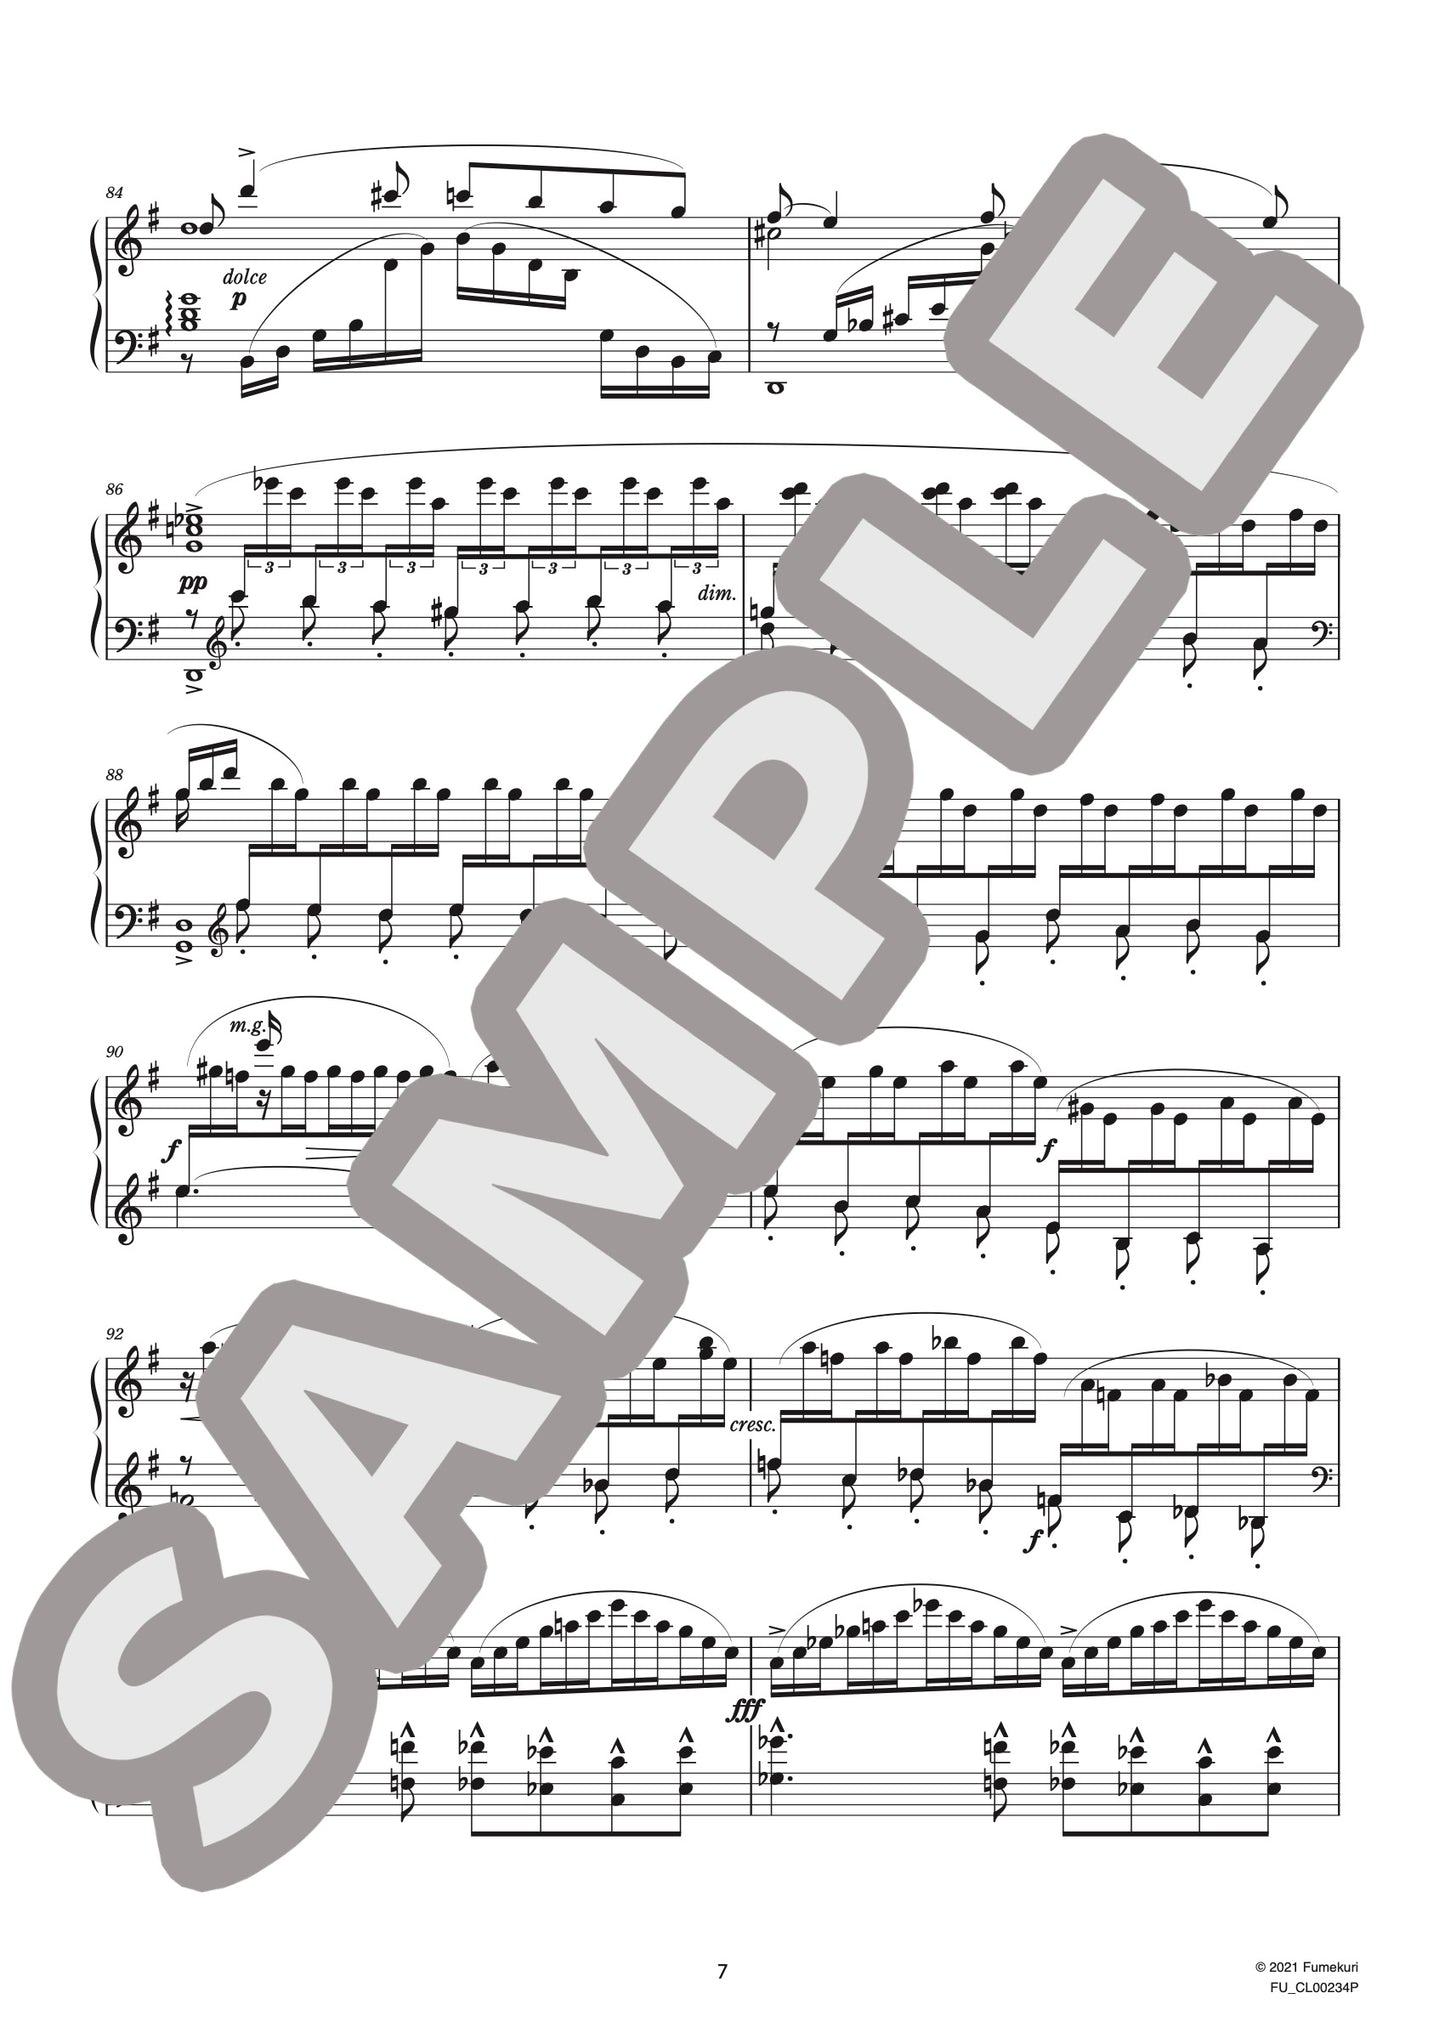 6つの演奏会用練習曲 第2集 ロマンティク 作品132（CHAMINADE) / クラシック・オリジナル楽曲【中上級】